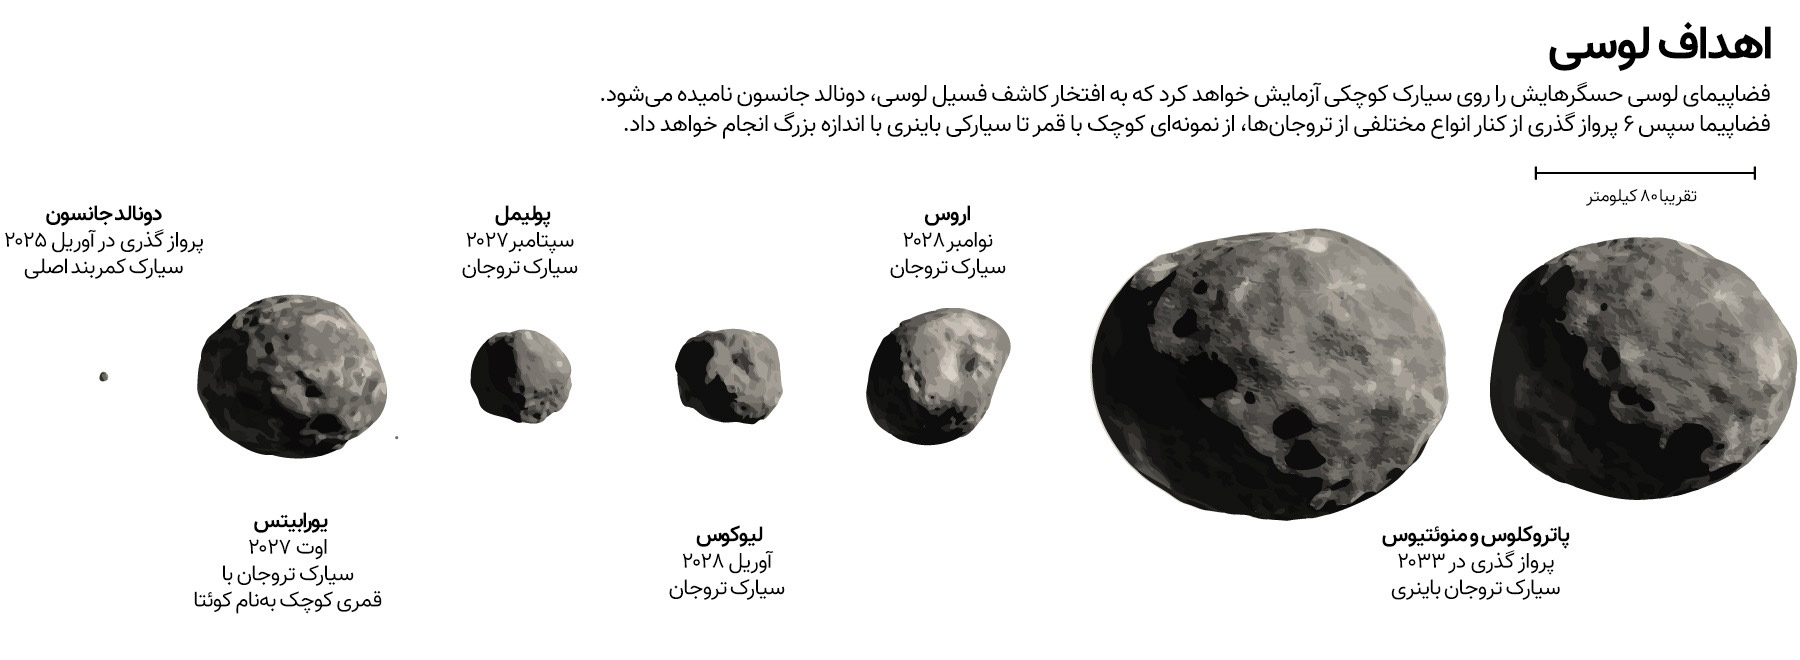 سیارک های تروجان هدف کاوشگر لوسی